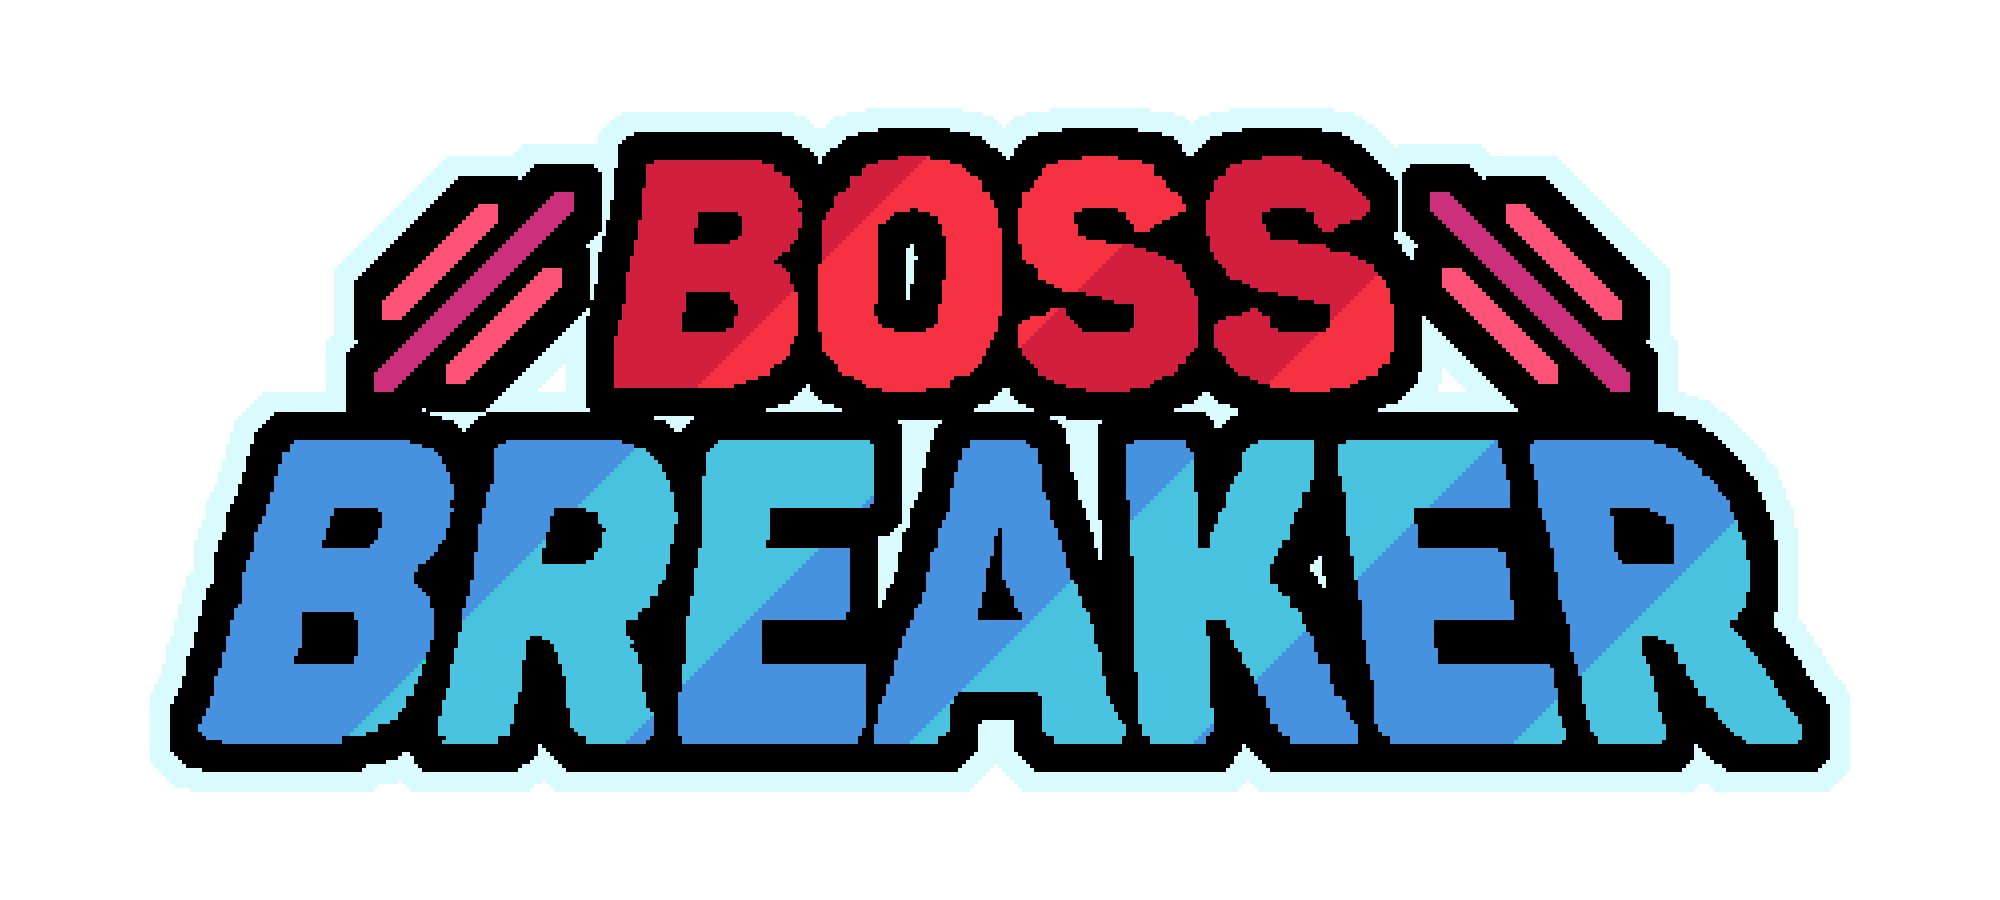 Boss Breaker